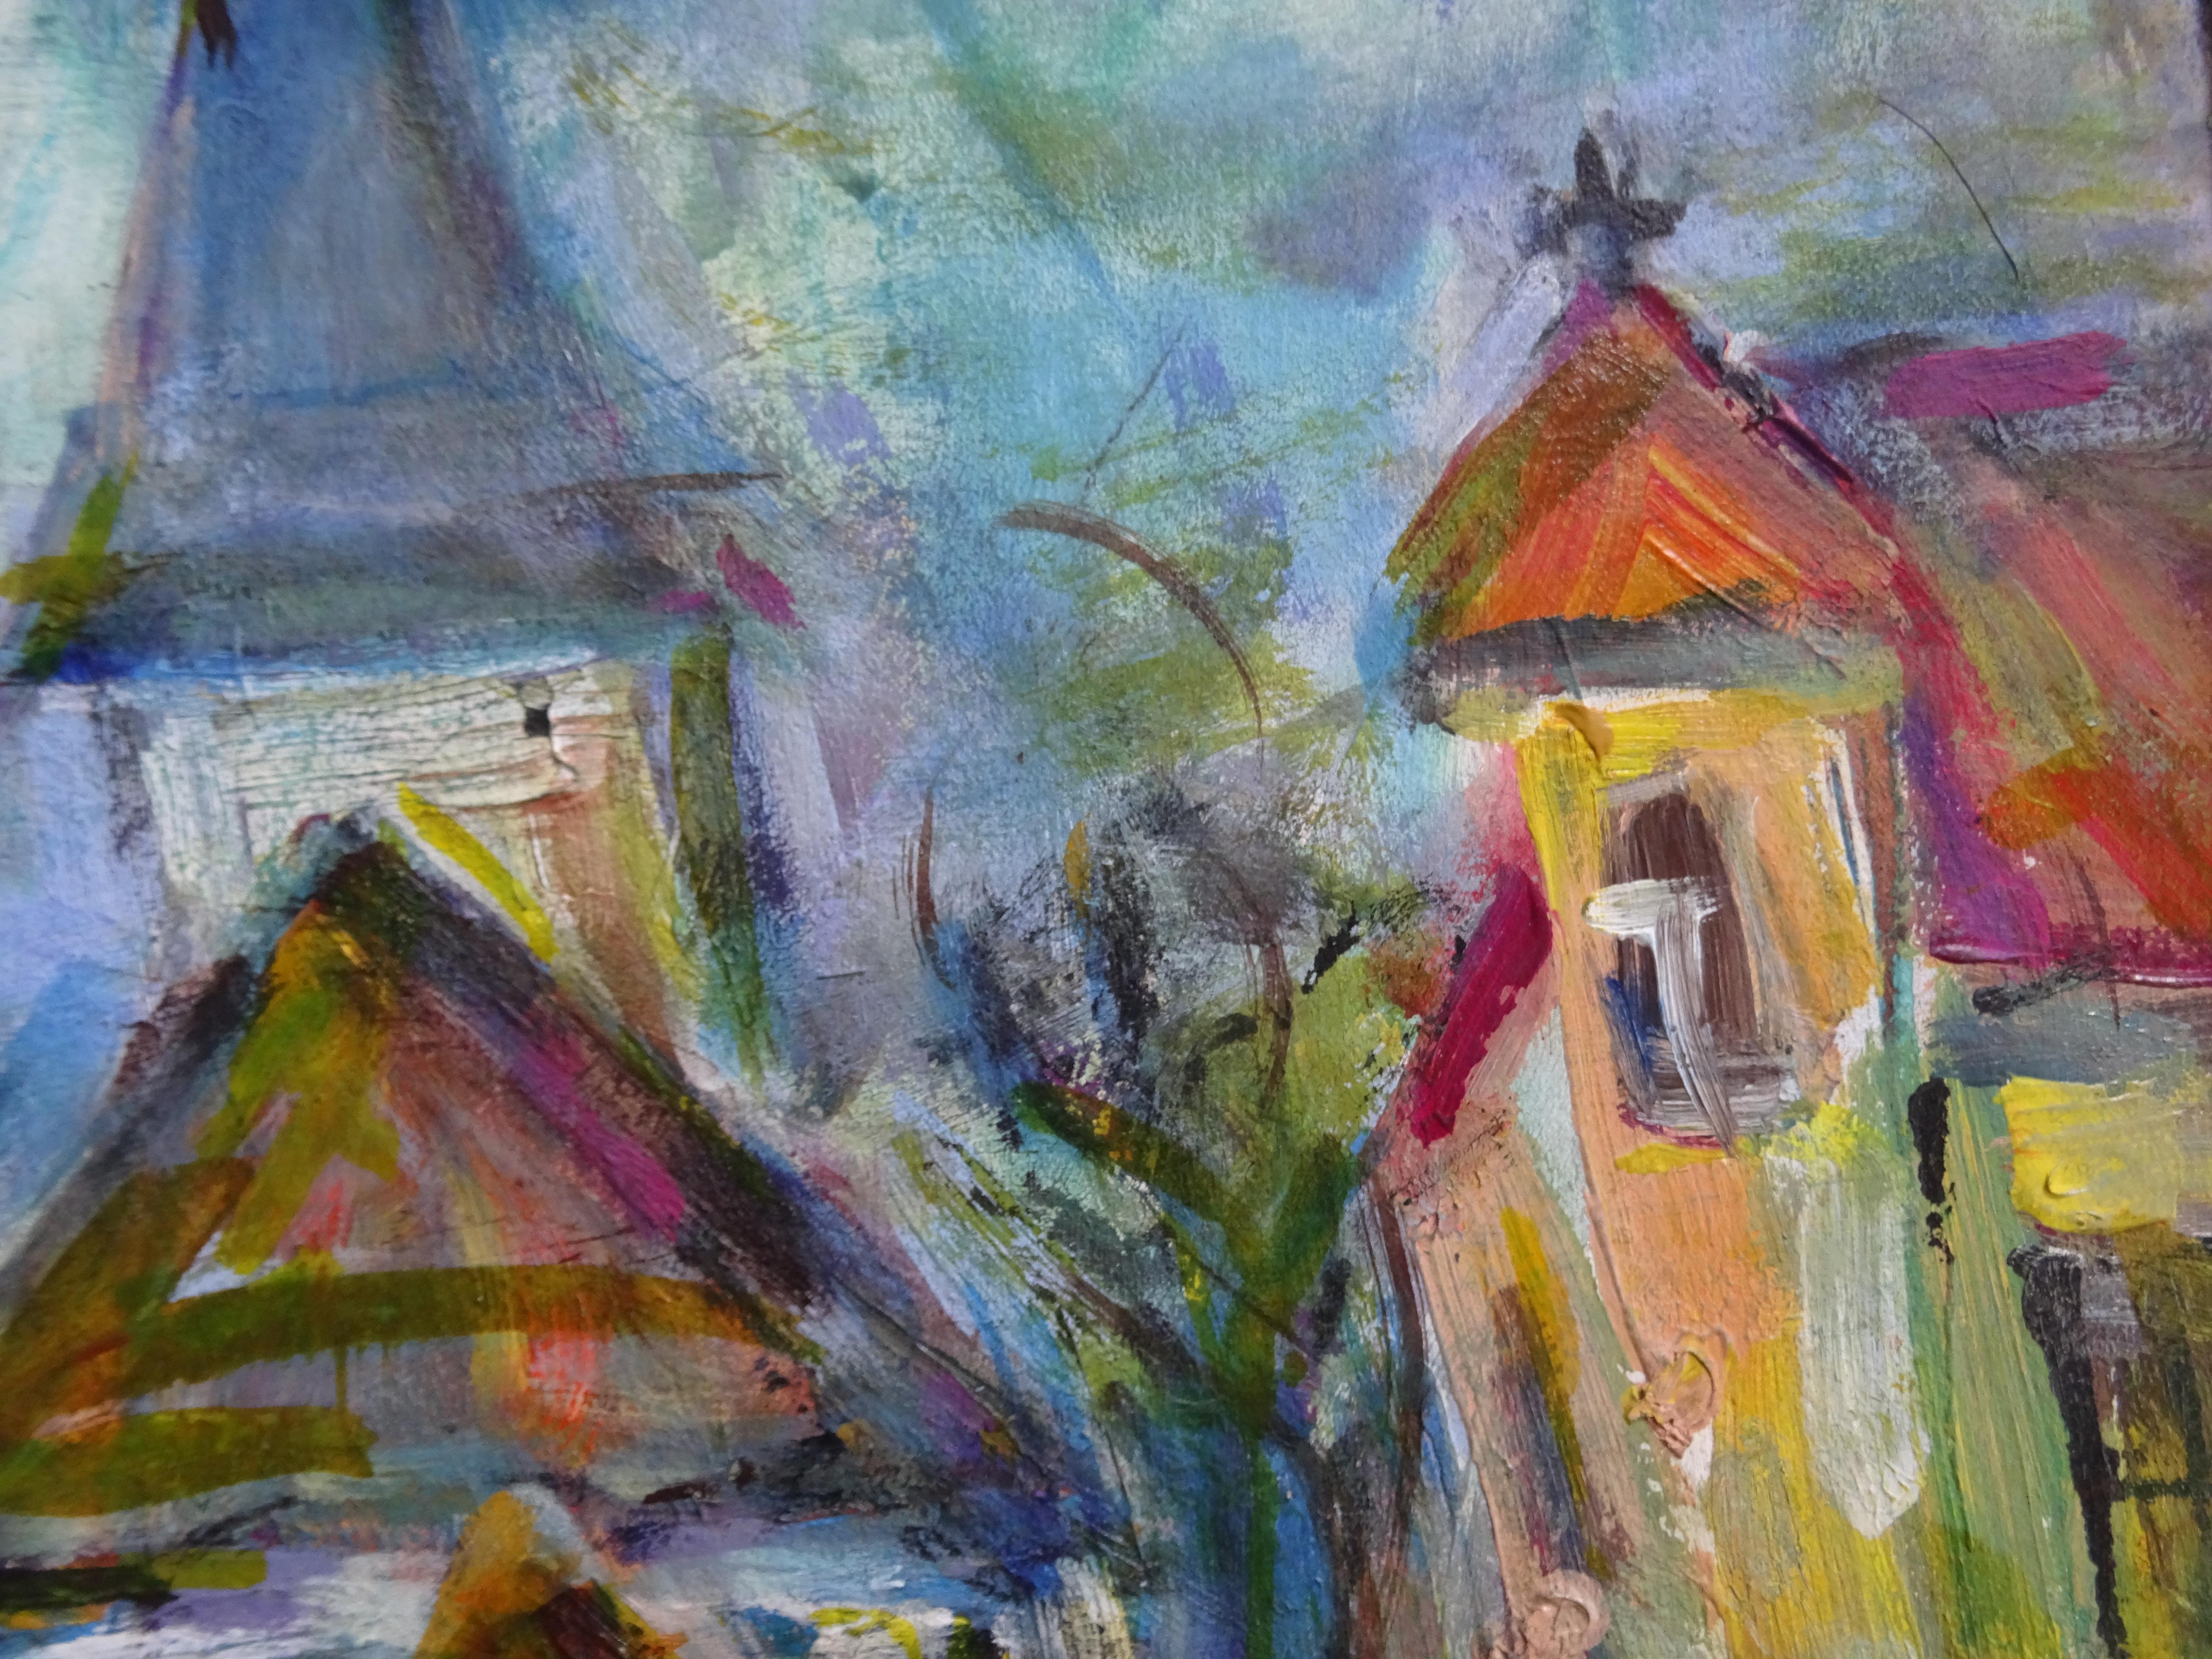 Rose Square par église. 2012, acrylique sur papier, 44x55 cm - Gris Landscape Painting par Dzidra Bauma